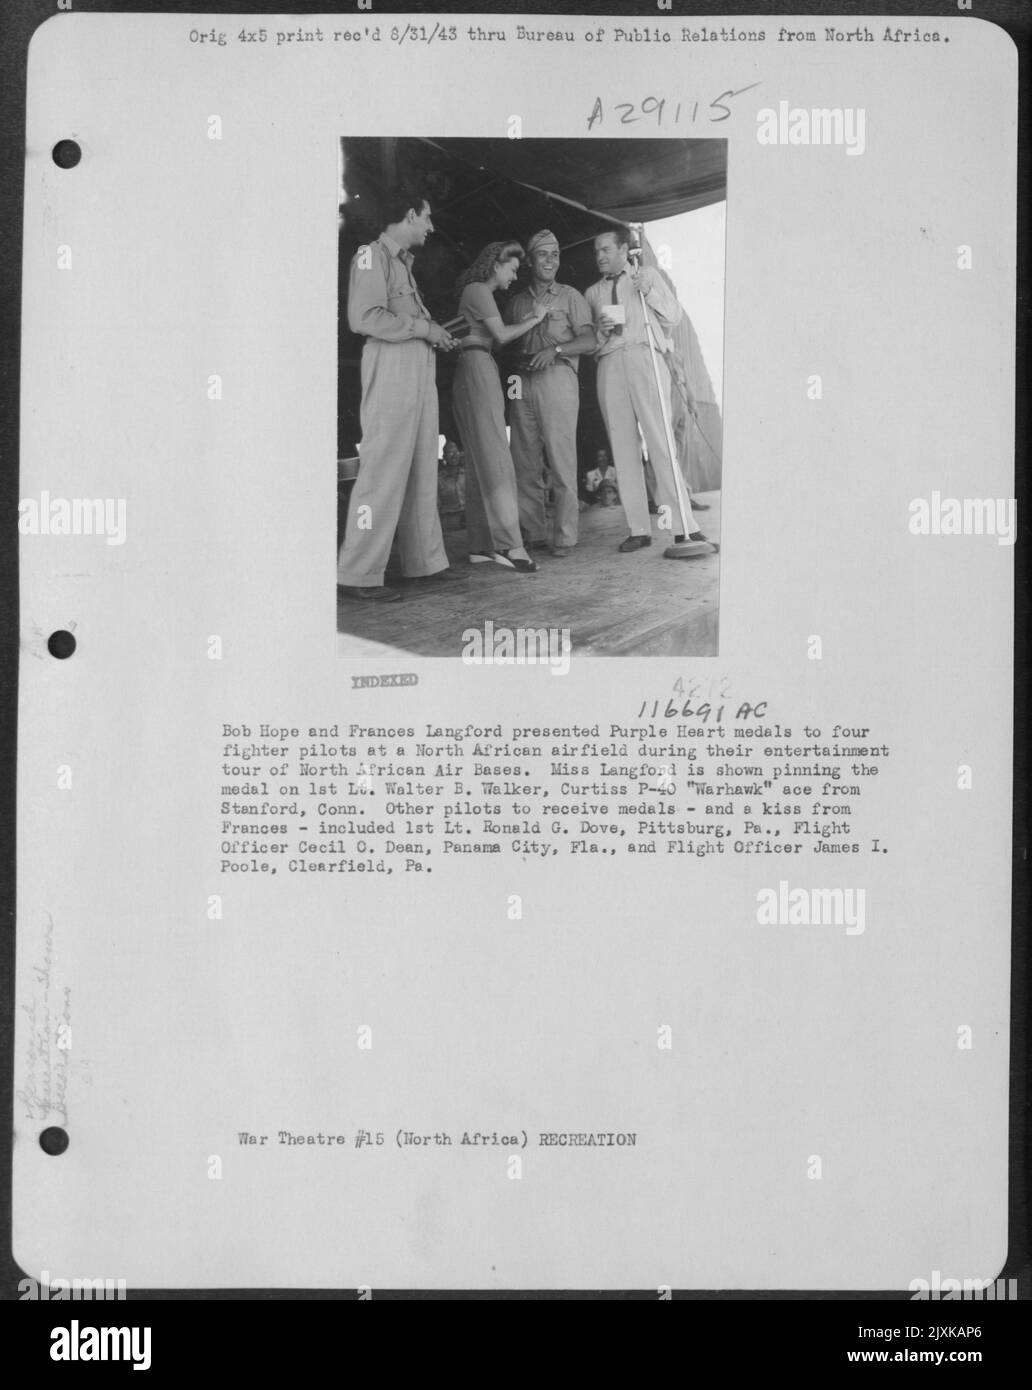 Bob Hope et Frances Langford ont présenté des médailles du cœur violet à quatre pilotes de chasseurs dans Un aérodrome d'Afrique du Nord lors de leur tournée d'animation des bases aériennes d'Afrique du Nord. Miss Langford est montrée Pinning the Medal sur 1st Lt. Walter B. Walker, Curtiss P-40 'W Banque D'Images